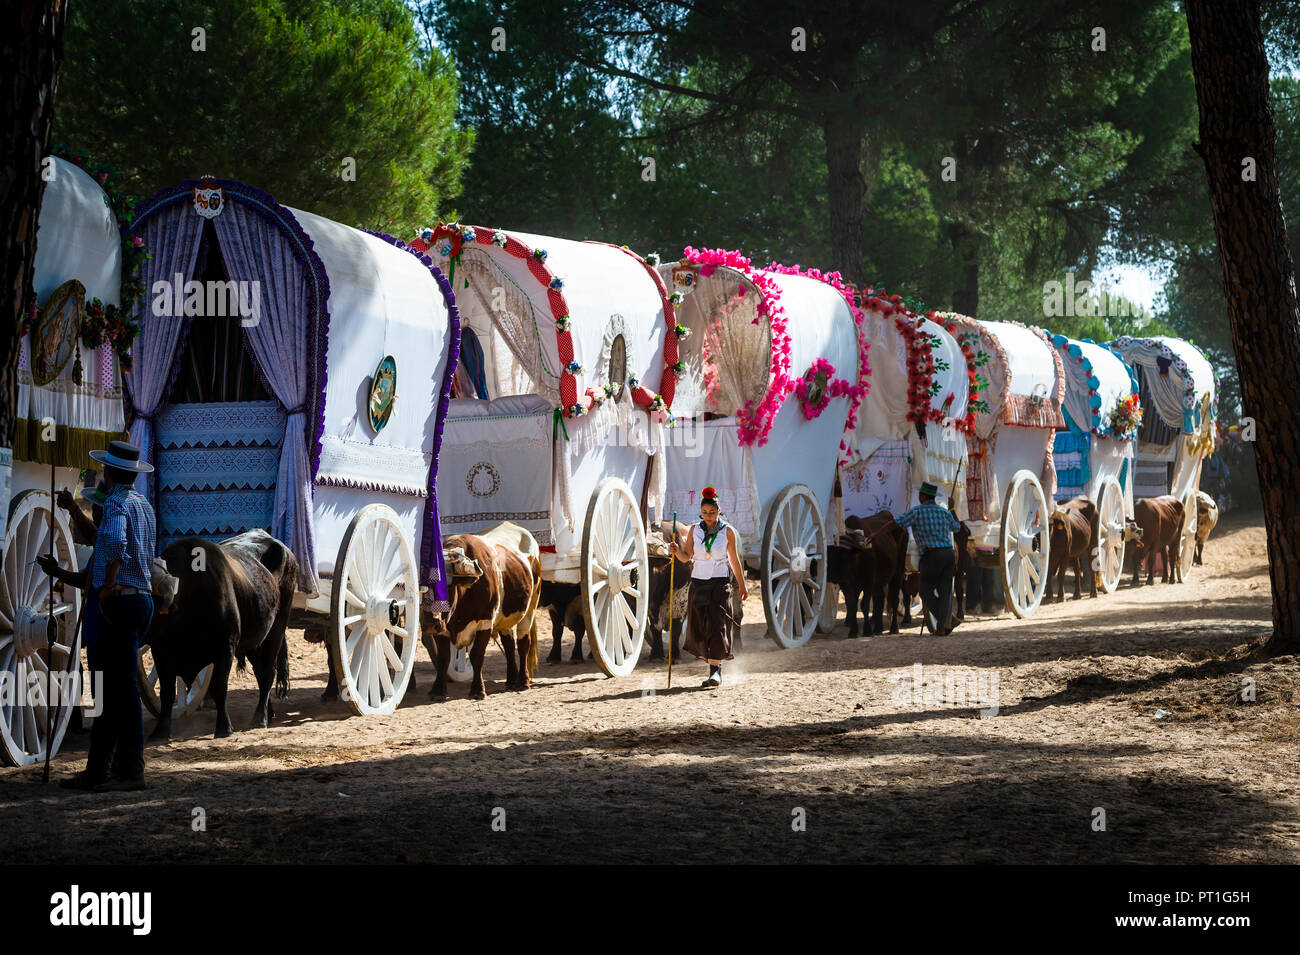 Wagons from the Hermandad de la Esperanza de Triana on the pilgrimage to El Rocio, Huelva, Spain Stock Photo